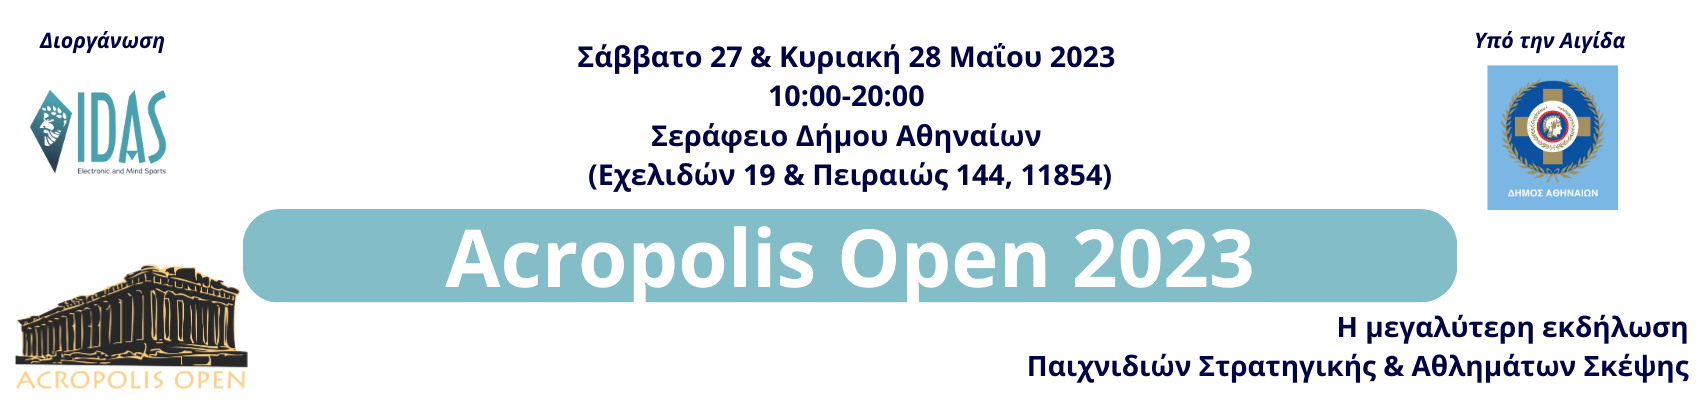 acropolis open 2023